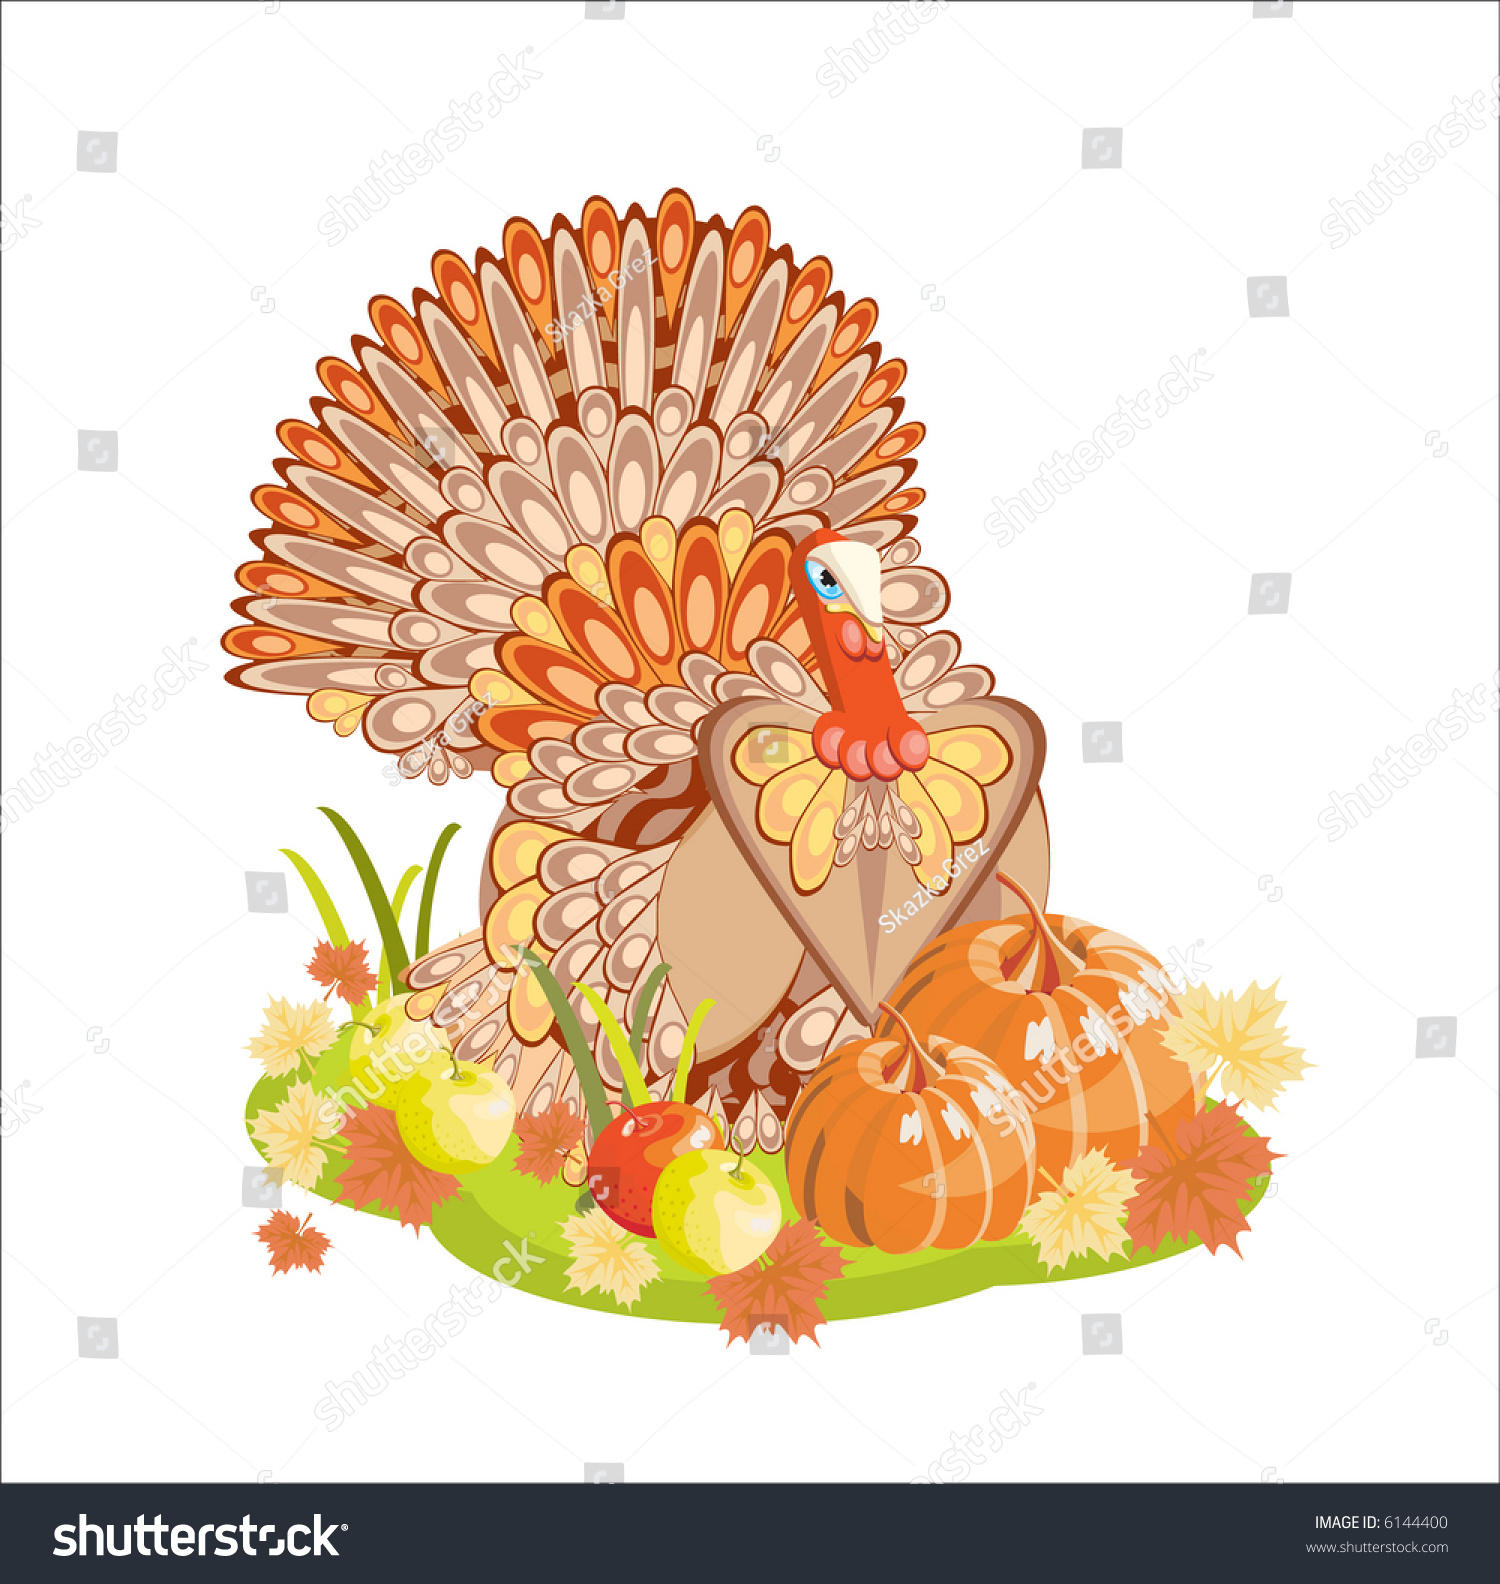 Harvest/Thanksgiving Turkey Stock Vector Illustration 6144400 ...